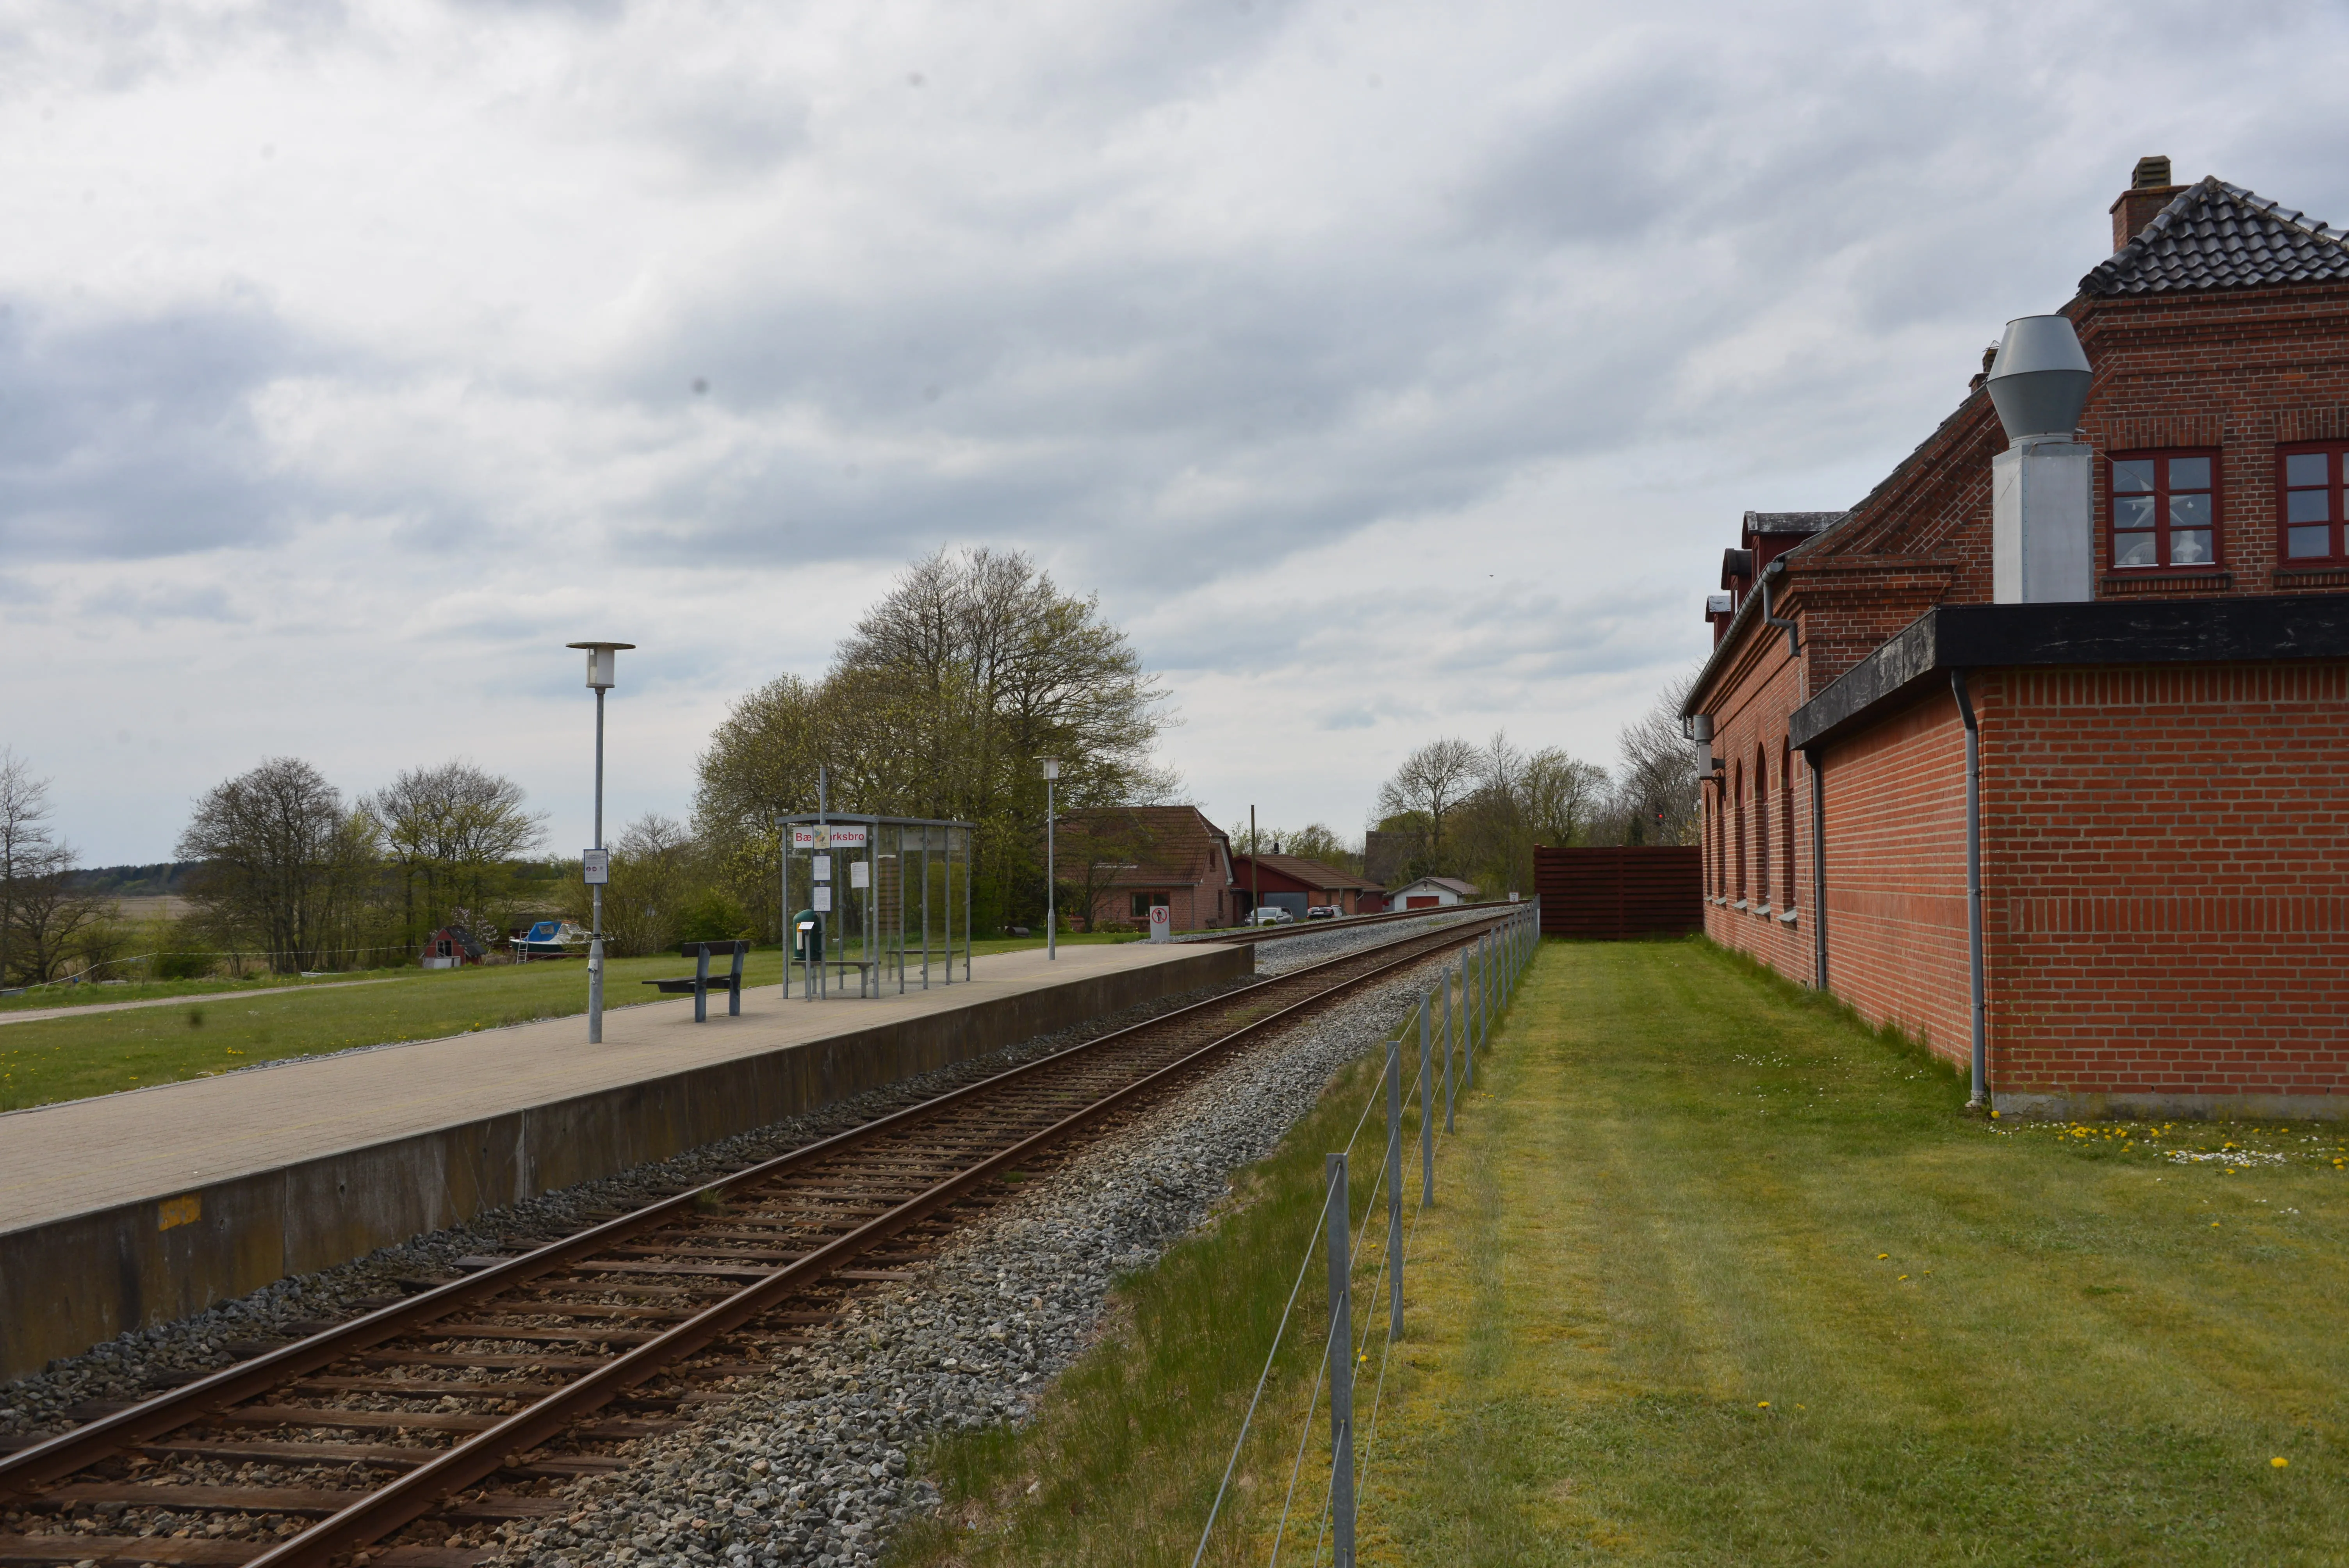 Billede af Bækmarksbro Station.